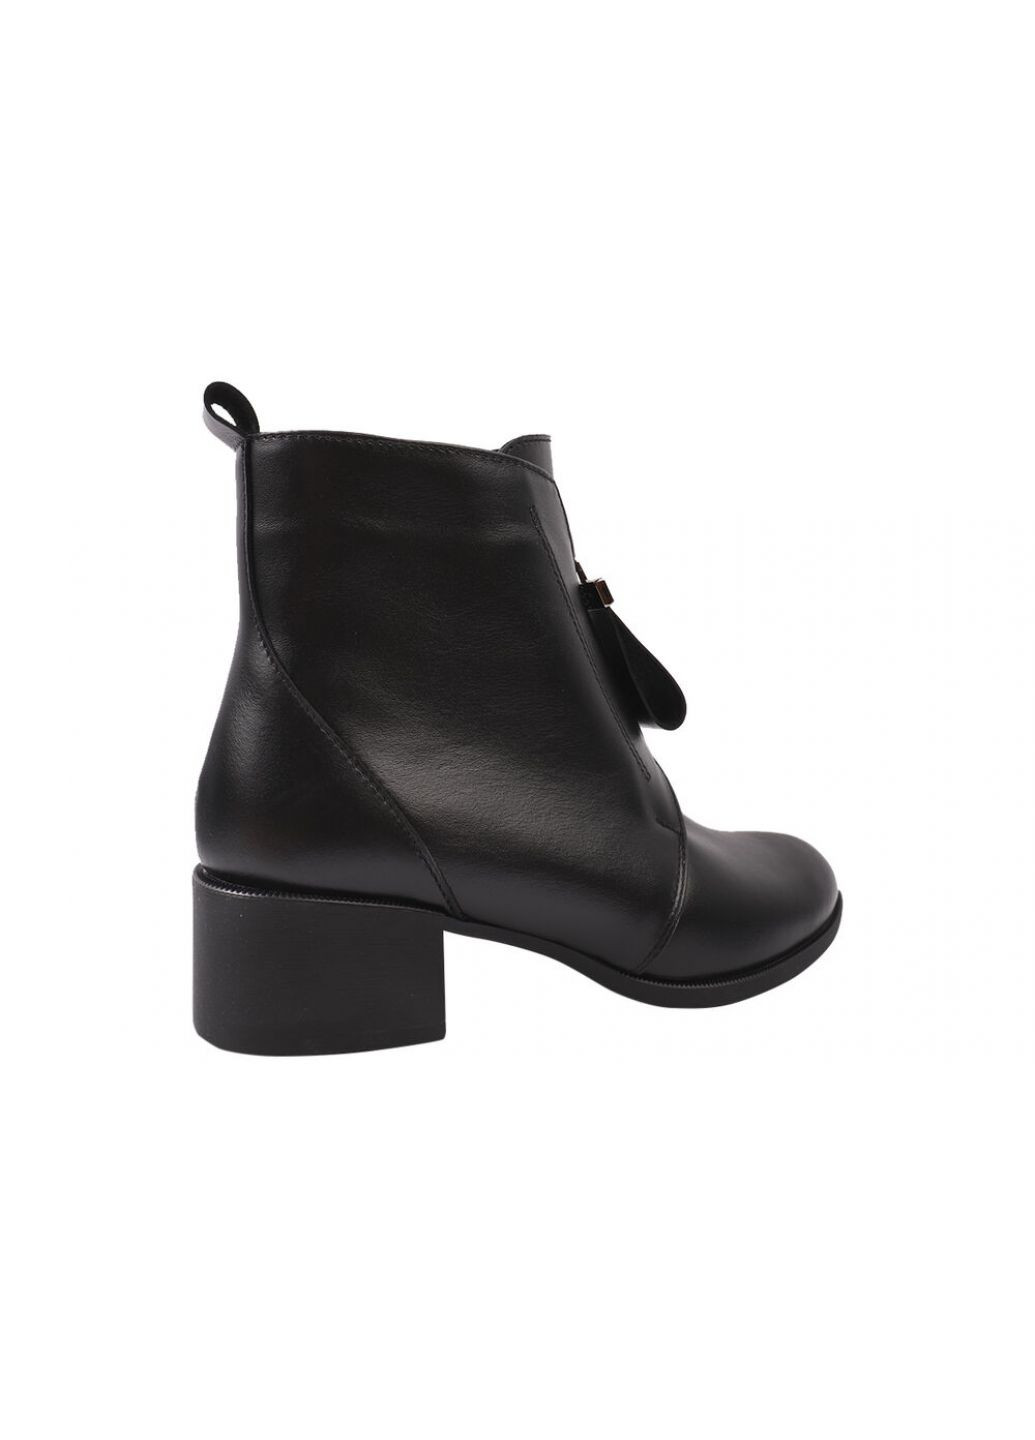 Черные ботинки женские из натуральной кожи, на большом каблуке, черные, SAVIO 190-20/22DHC